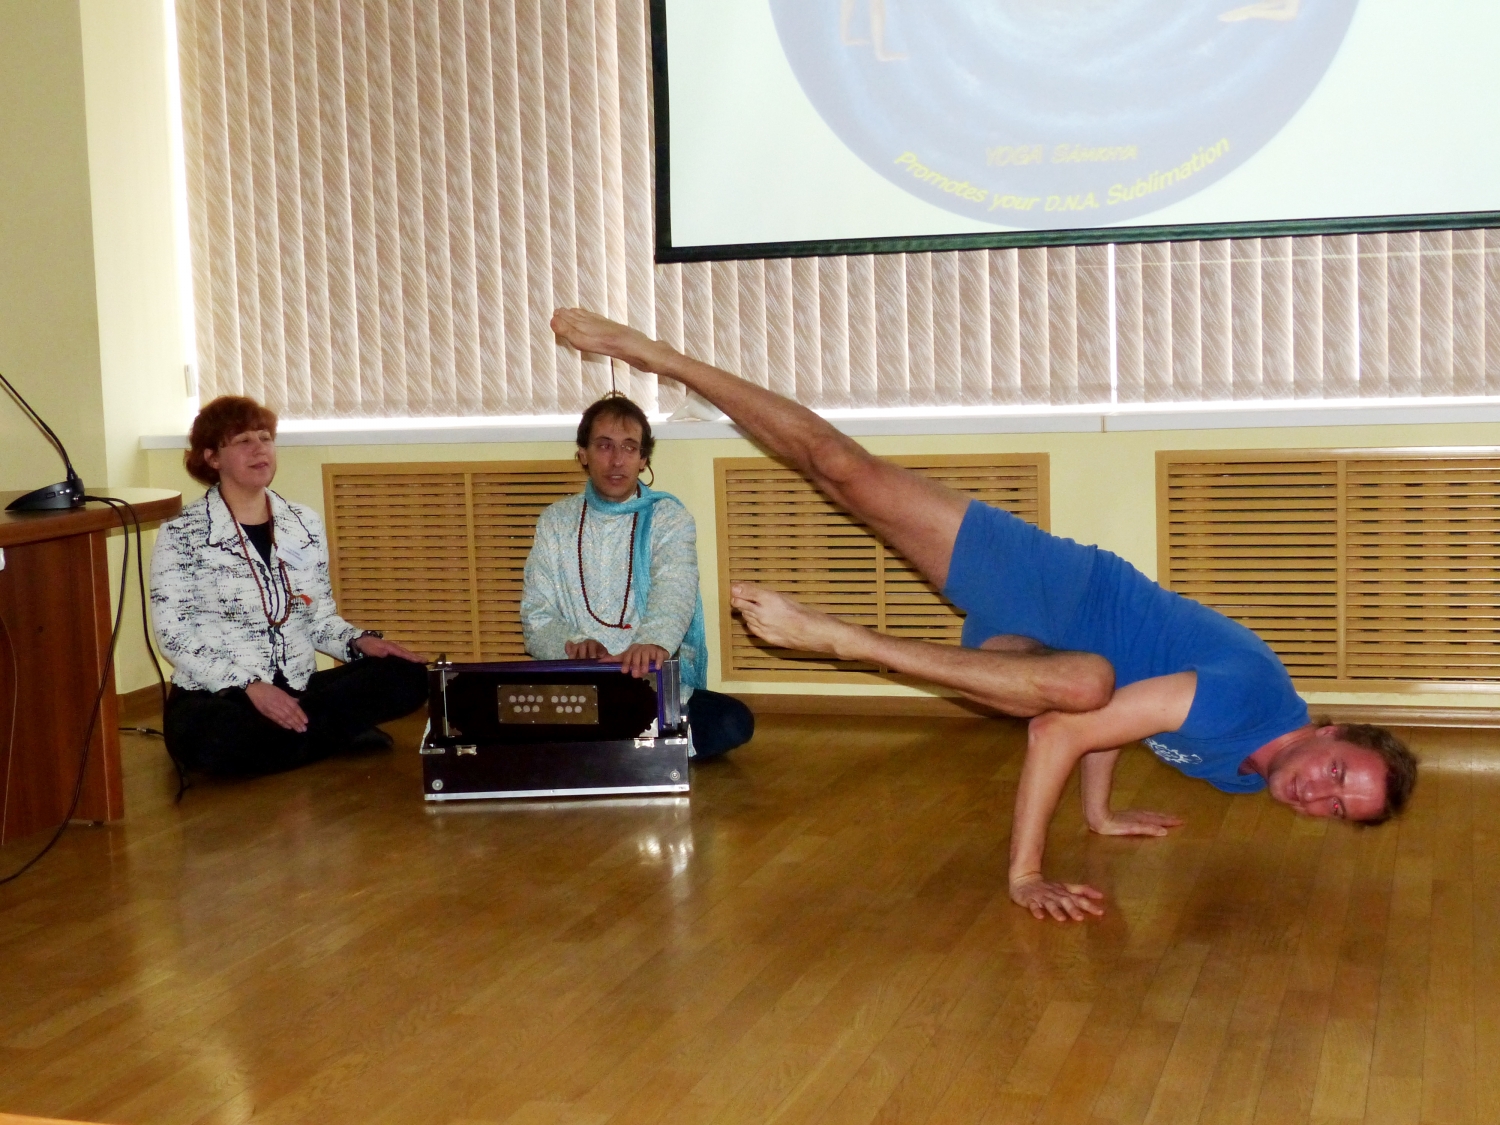 Encontro de H.H. Jagat Guru Amrta Sūryānanda Mahā Rāja com a Direcção da Federação Russa do Yoga Clássico - Moscovo, Rússia - 2013, Abril